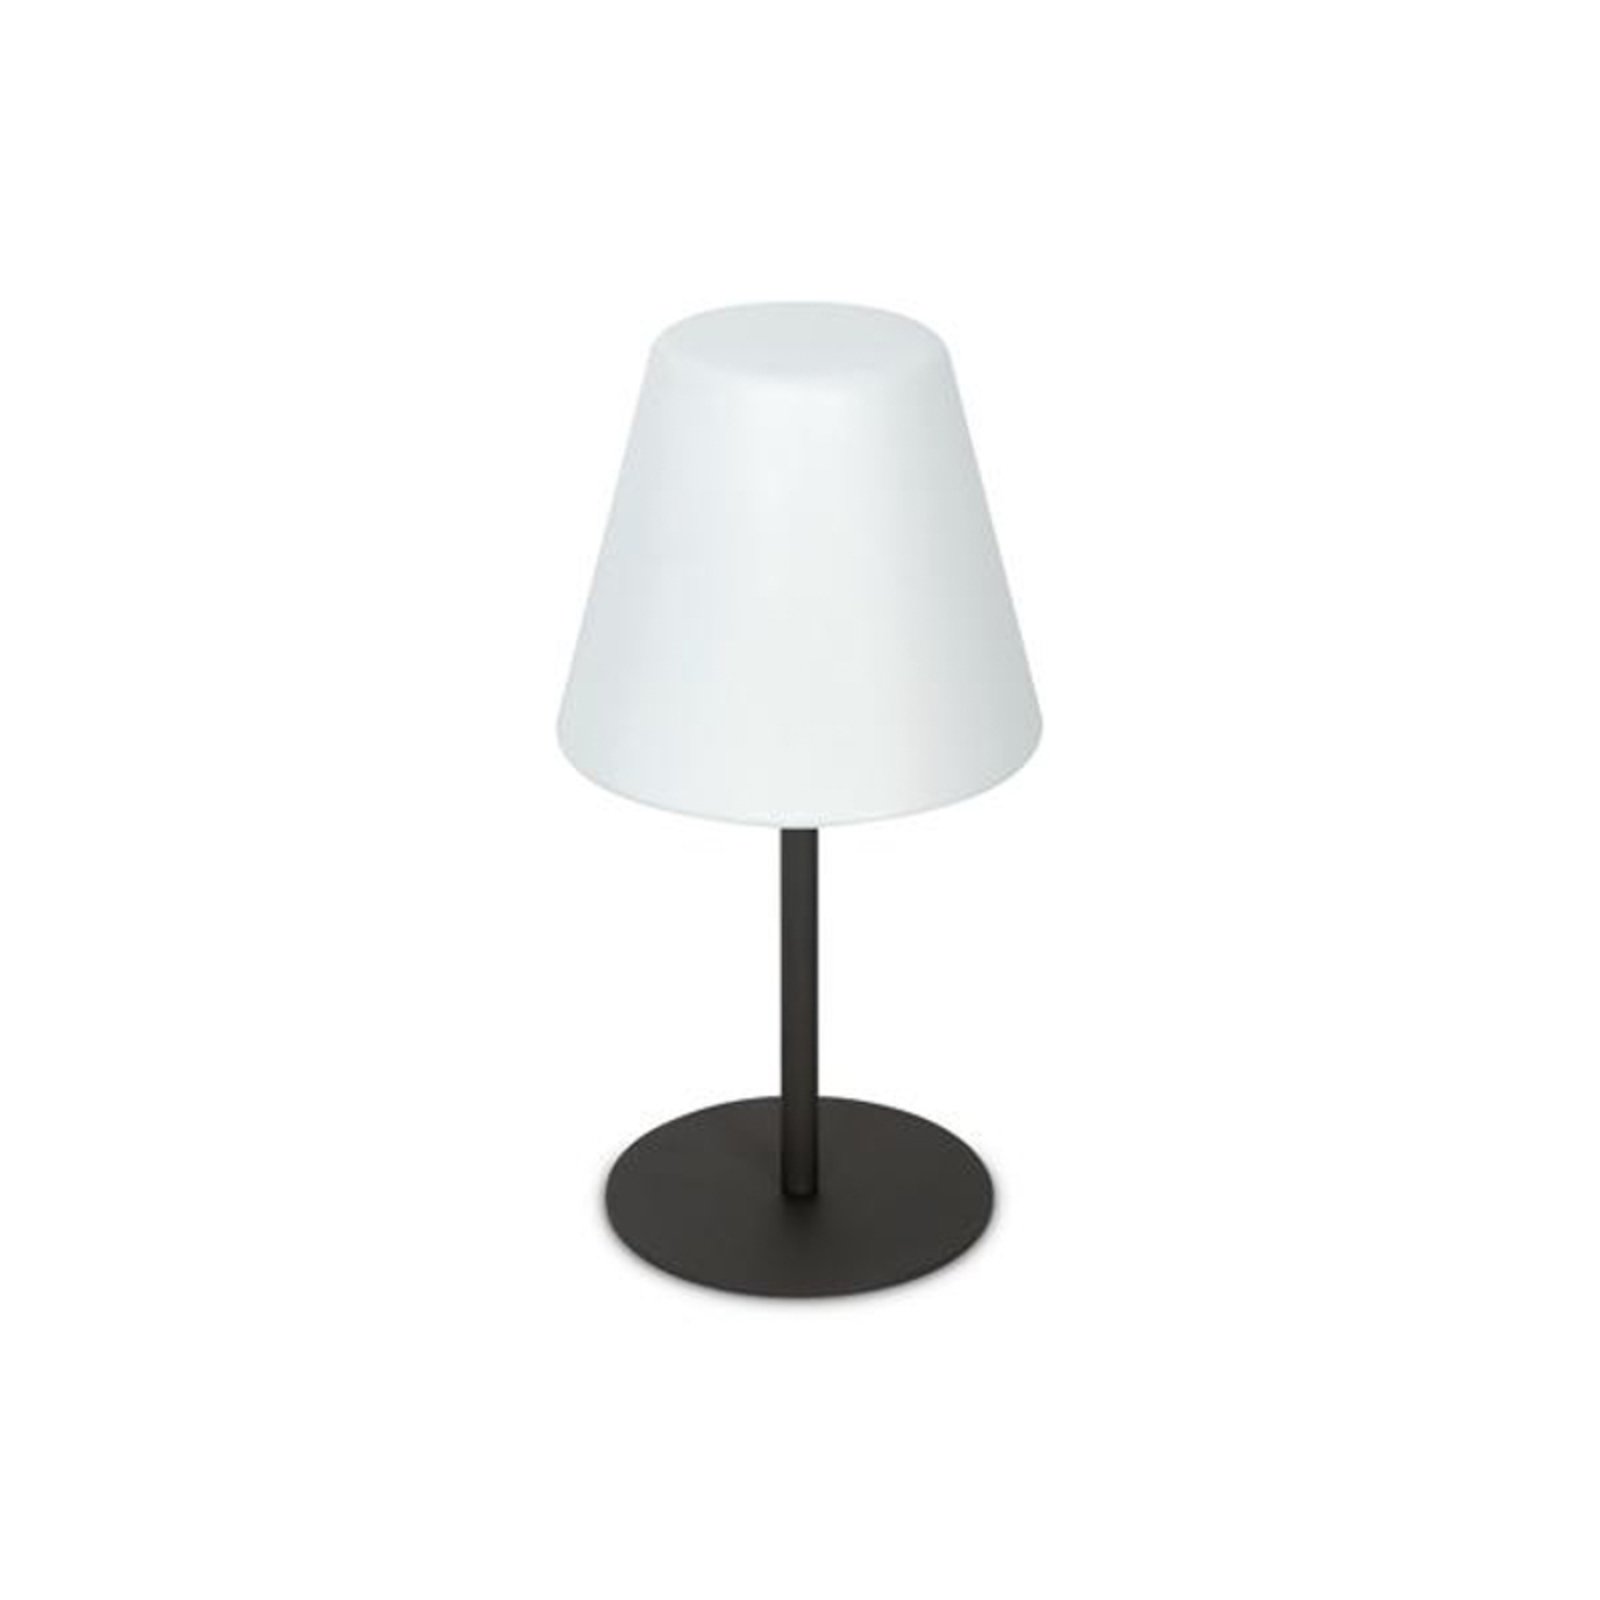 Ideal Lux Arcadia utendørs bordlampe, antrasitt, høyde 53 cm